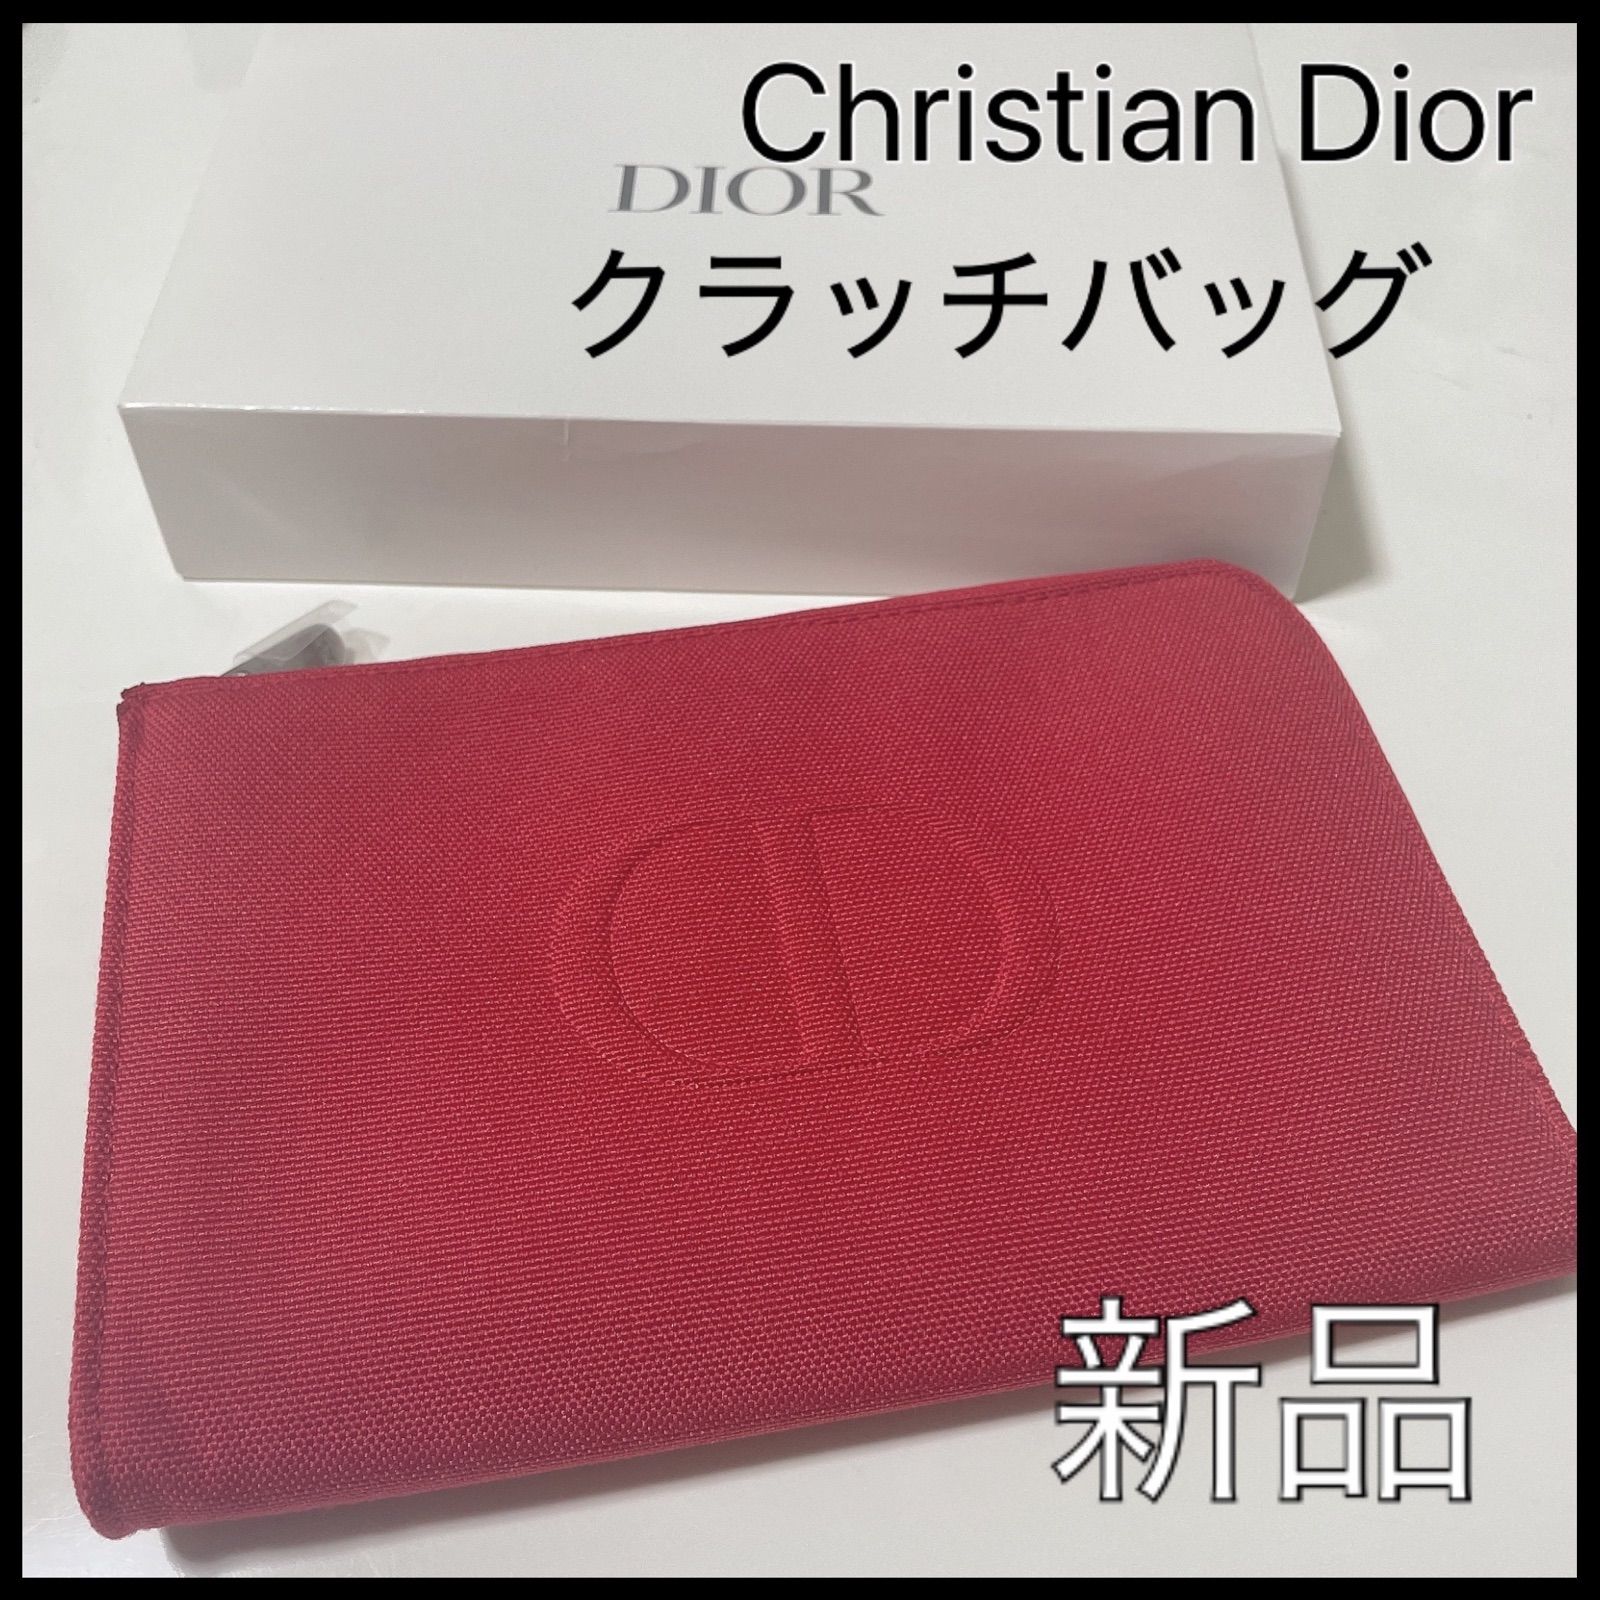 Dior ディオール 赤 レッド メンズ ブランド クラッチバッグ